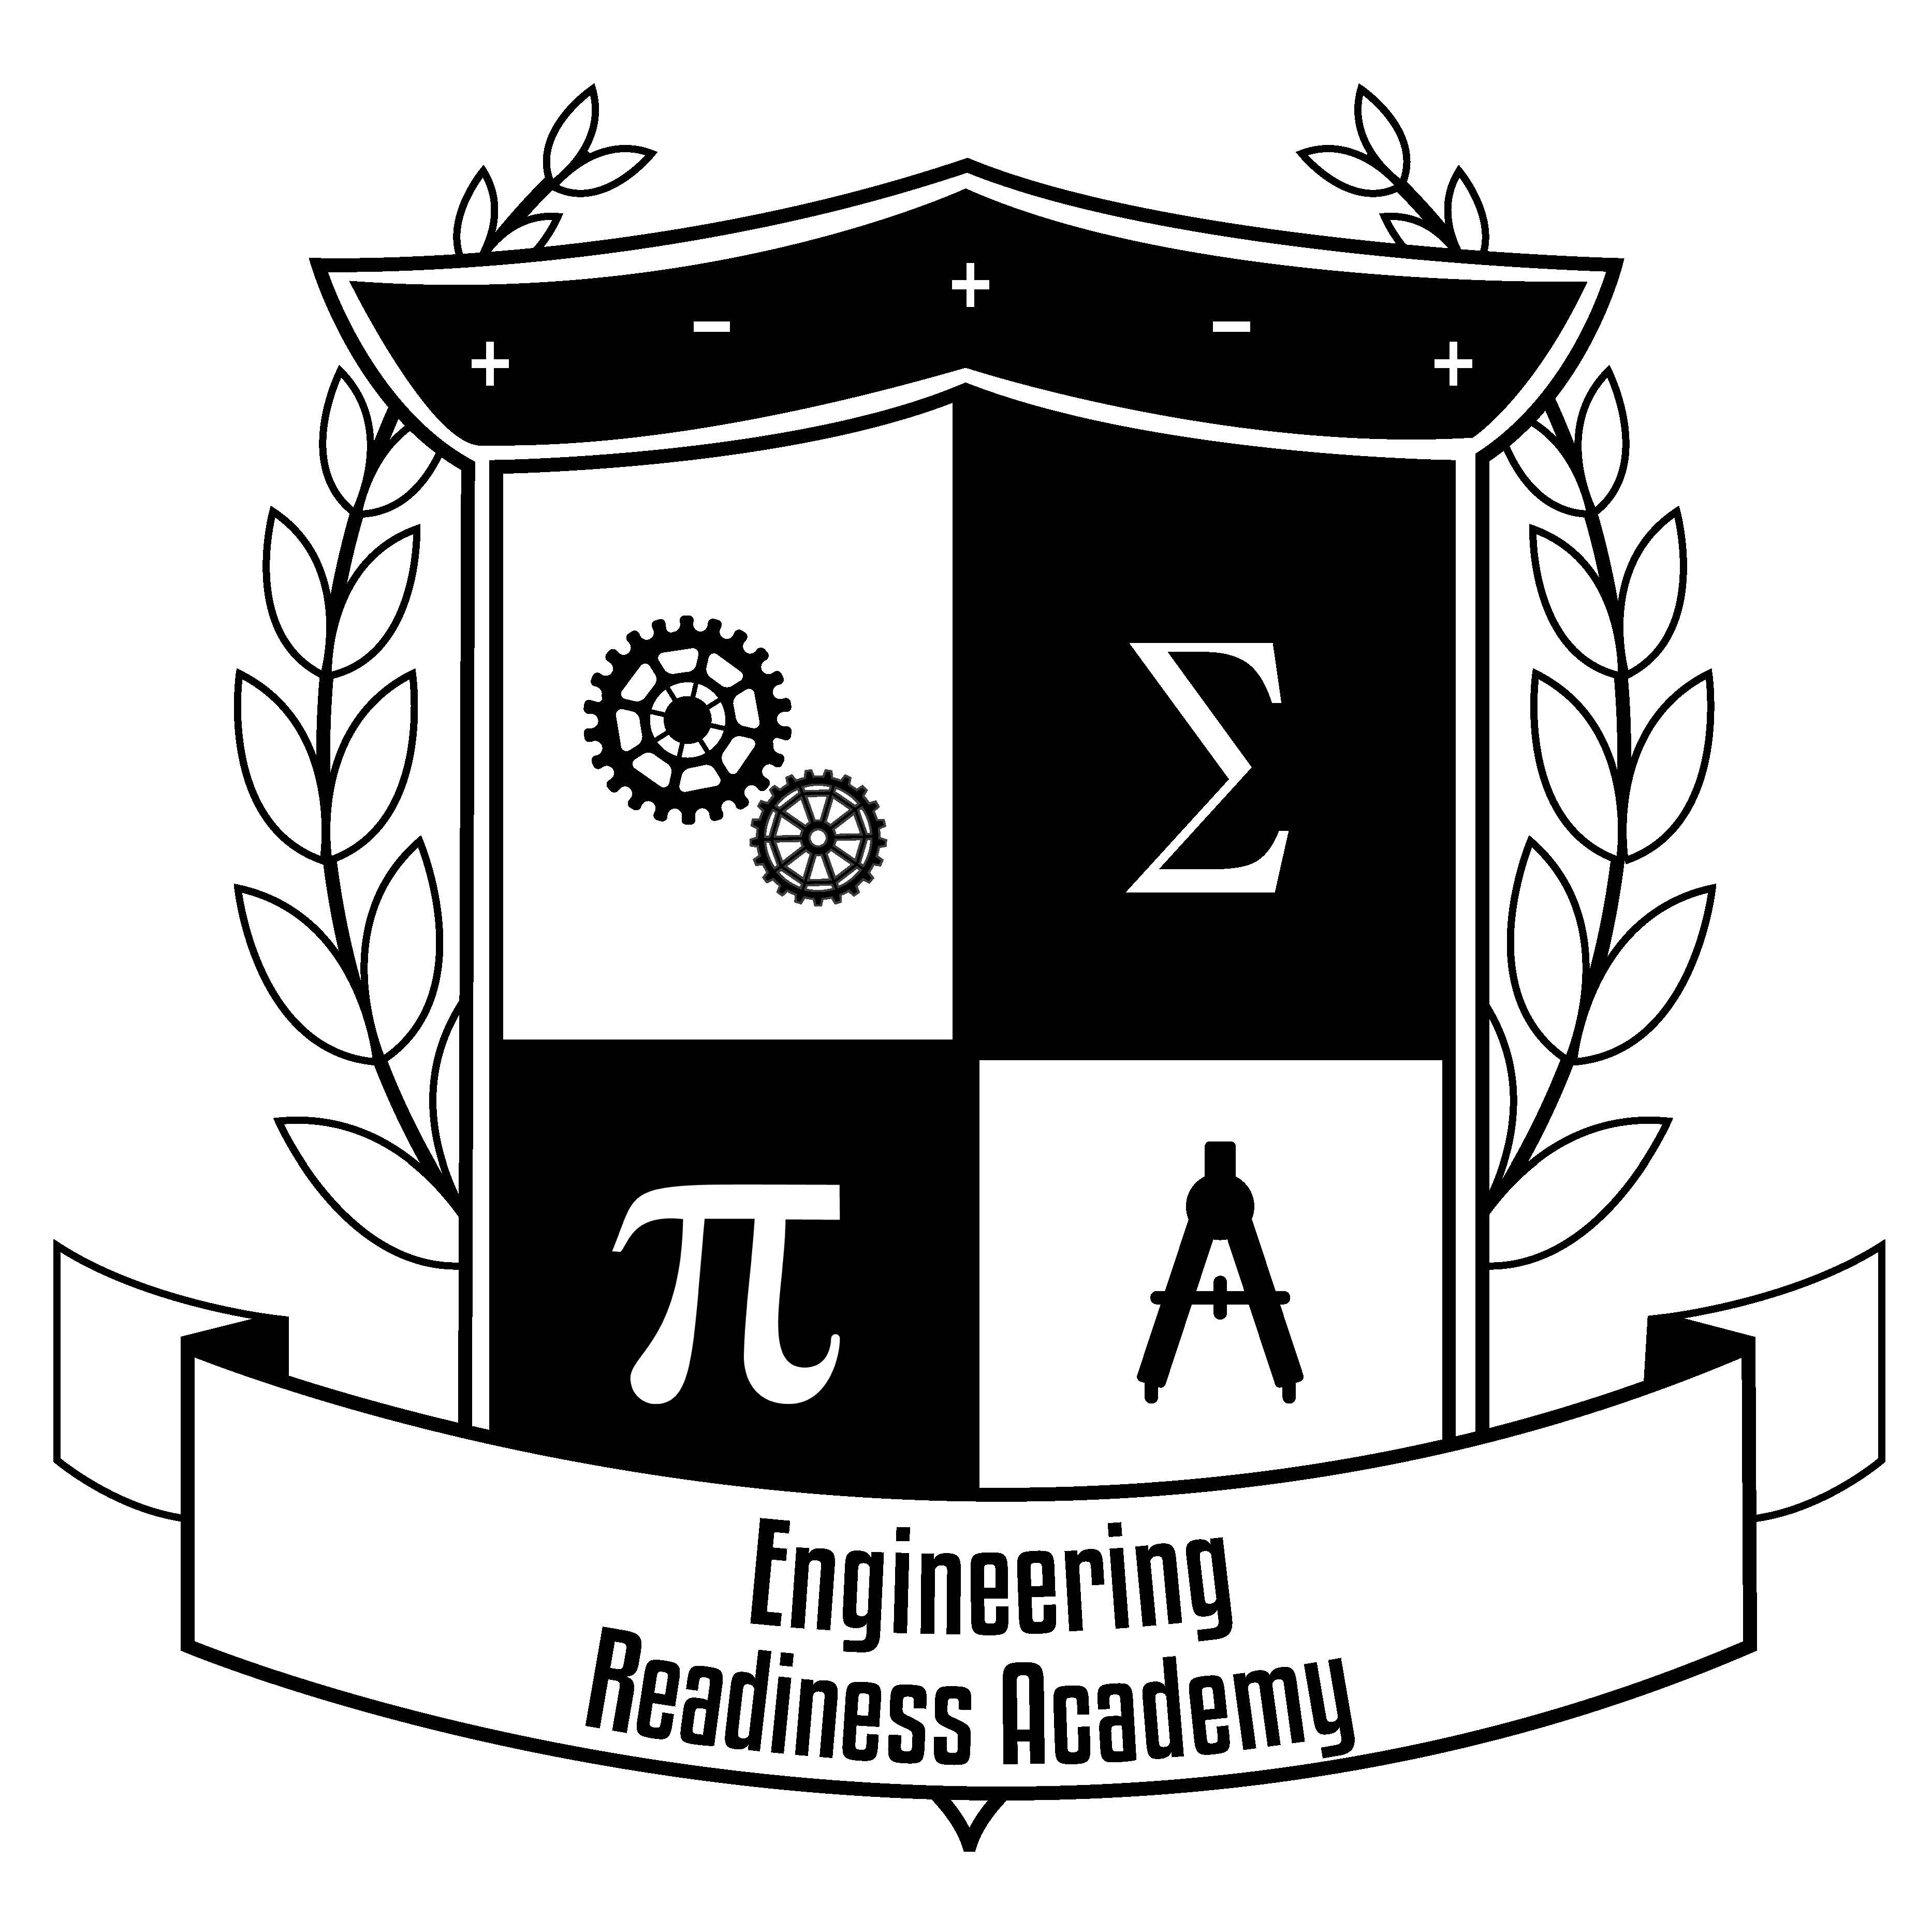 Engineering Readiness Academy